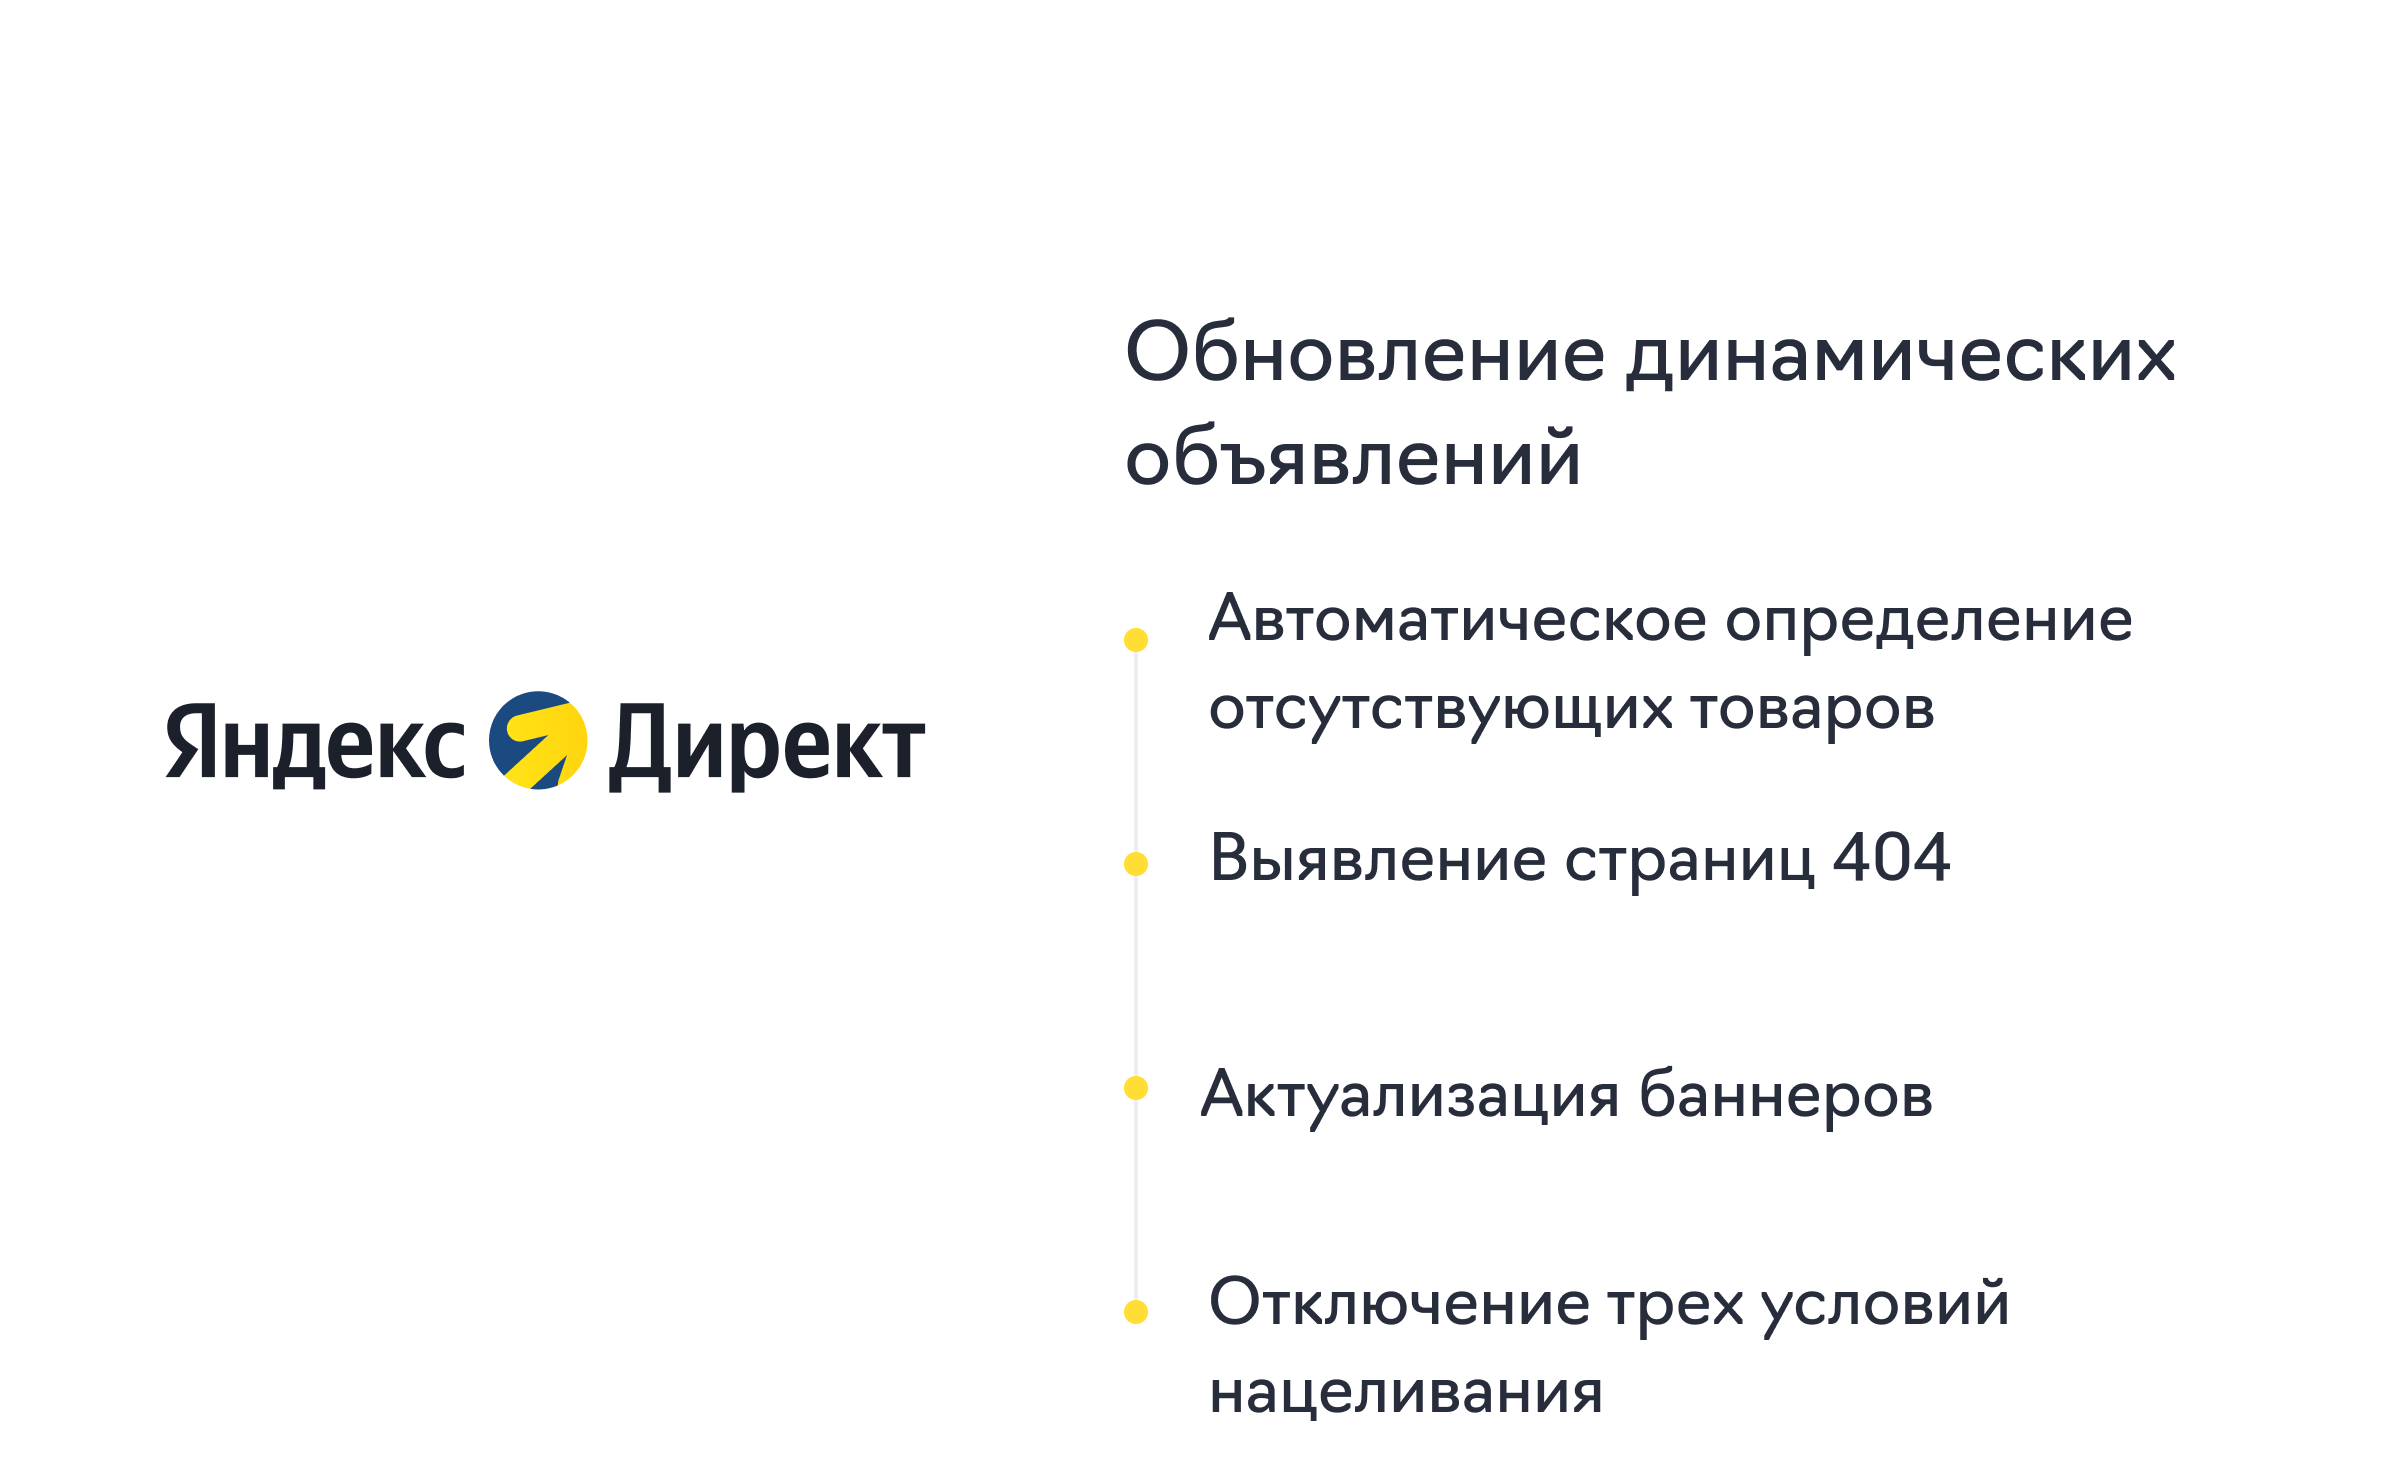 Яндекс Директ #1